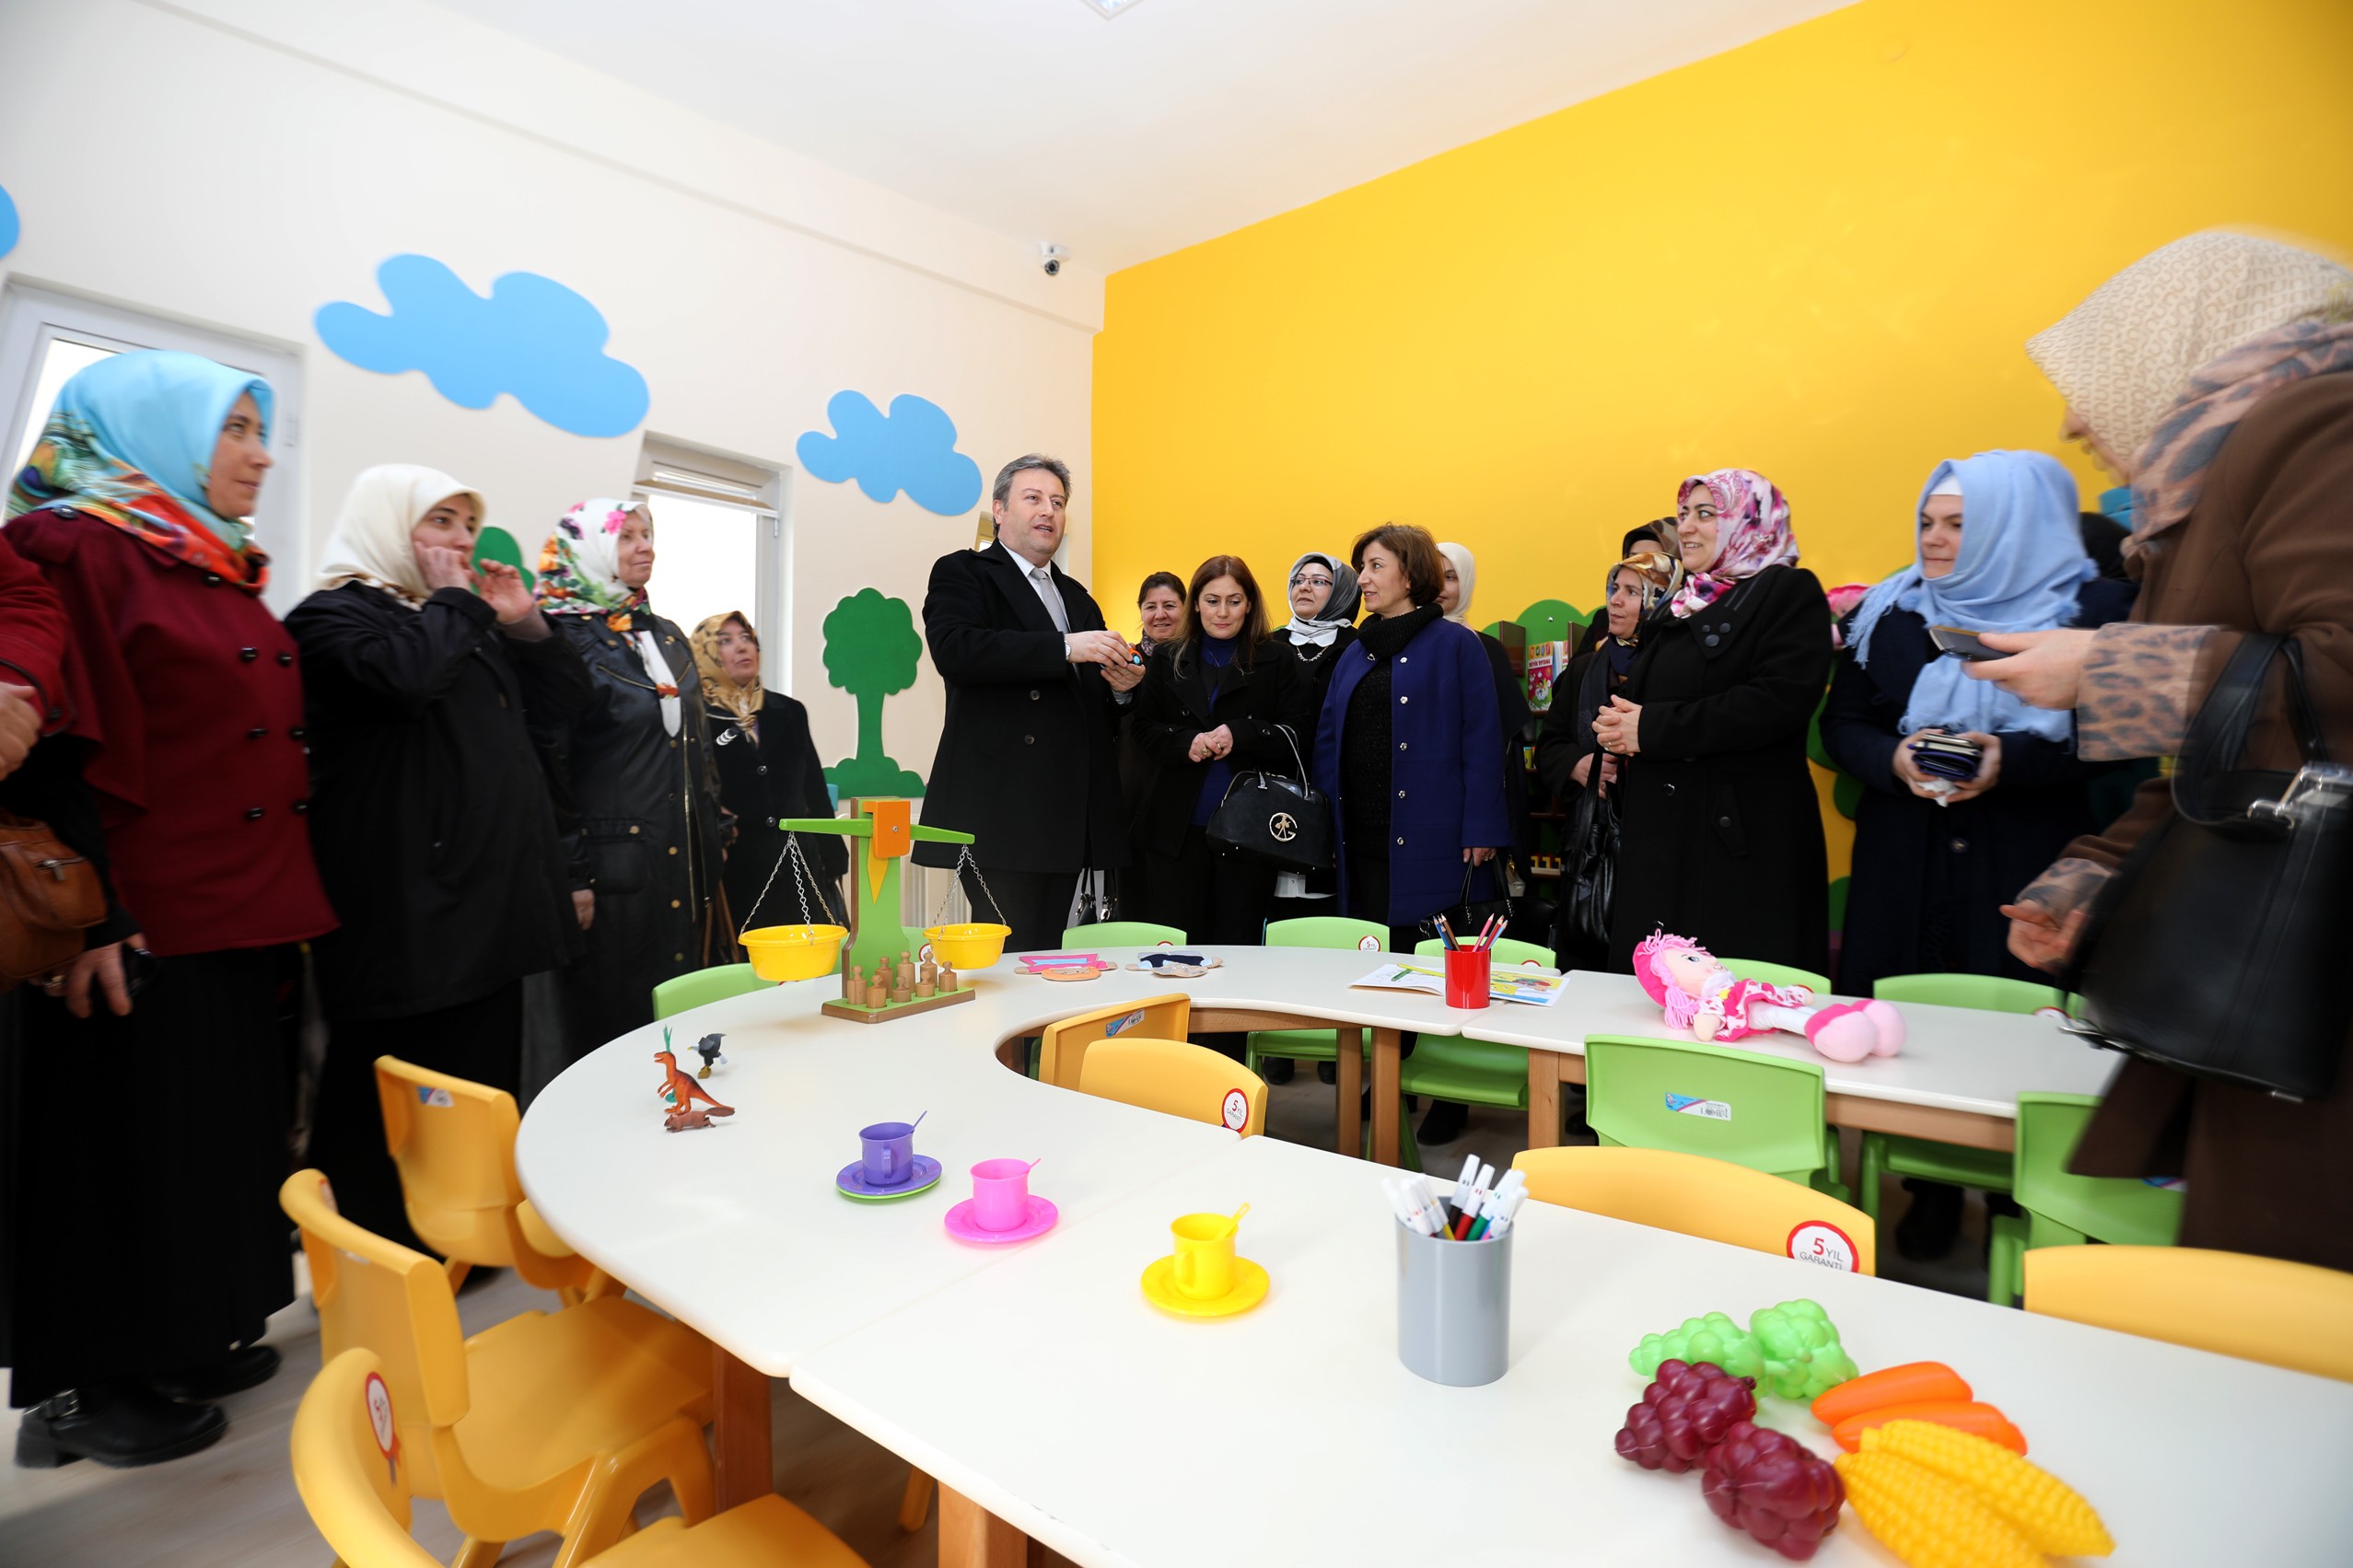 Başkan Palancıoğlu, Kadın Kültür Merkezini Talaslı kadınlara tanıttı